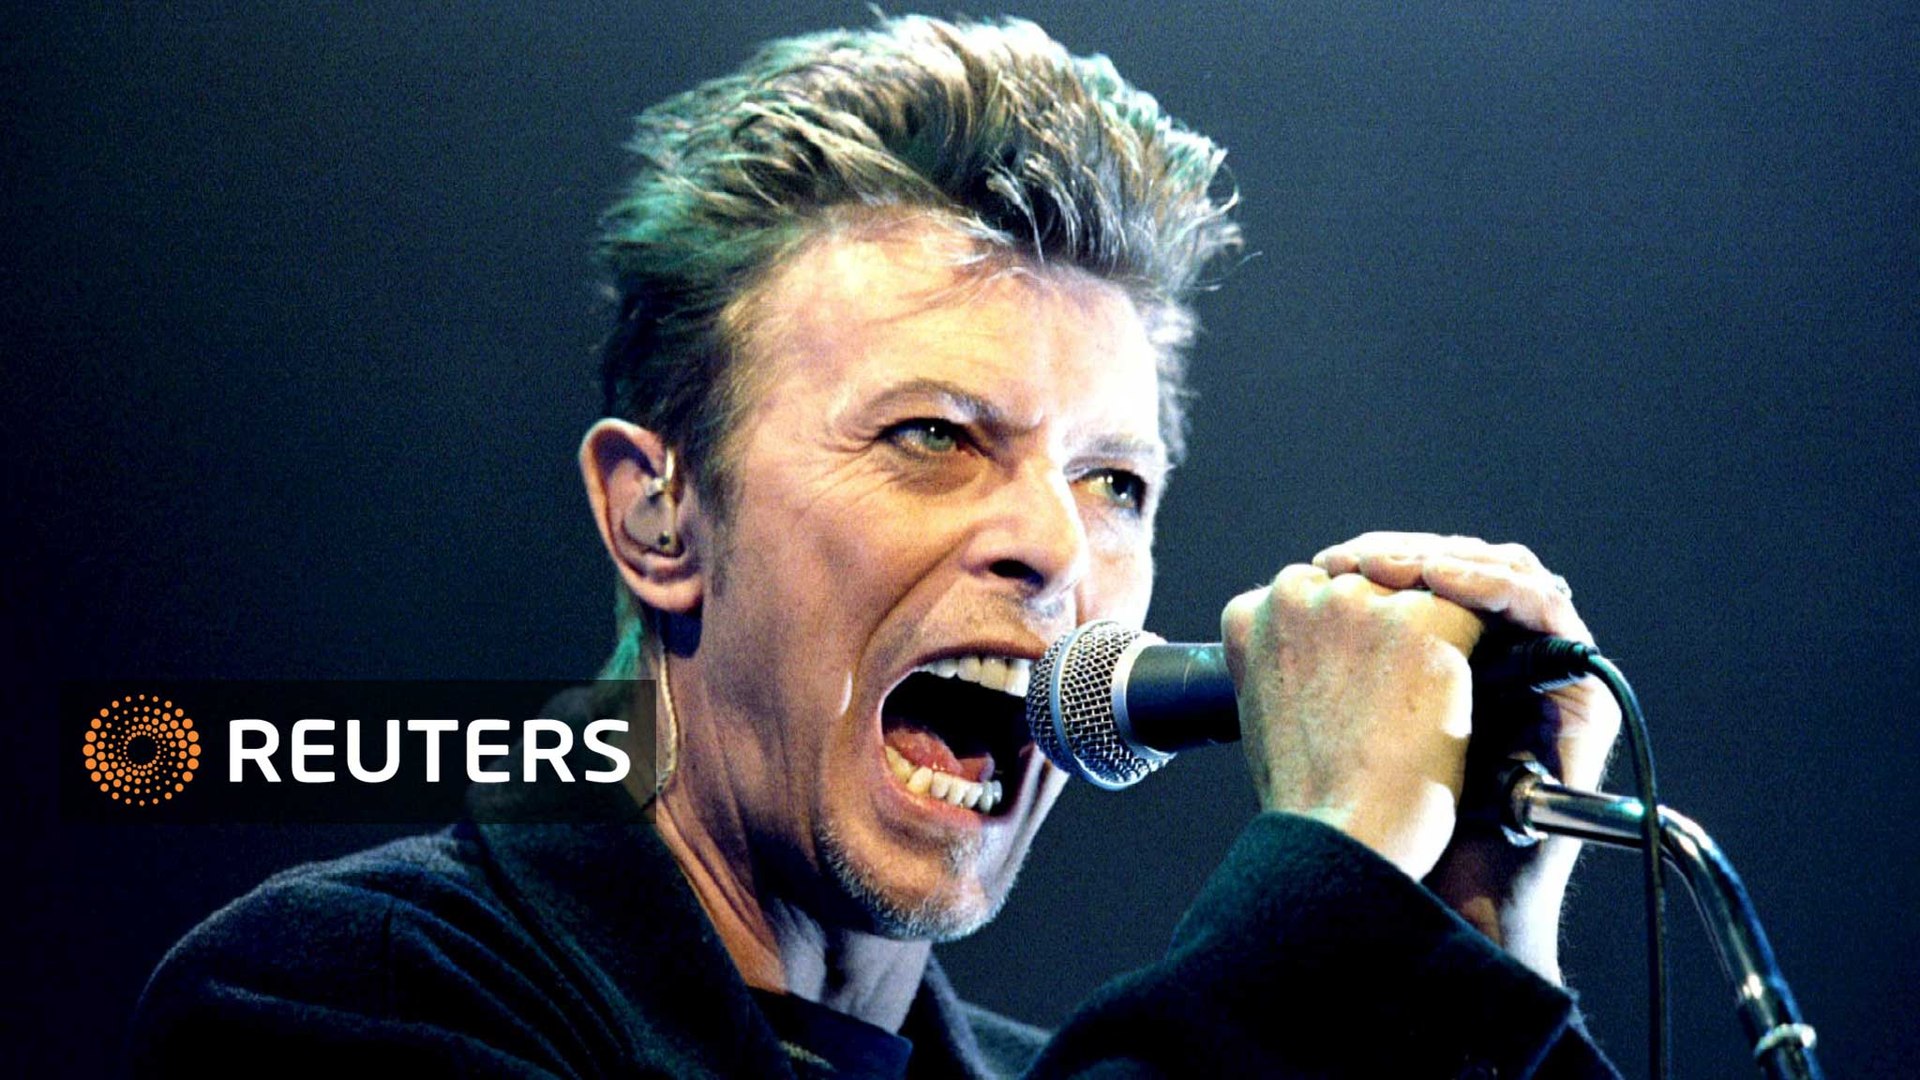 David Bowie dies of cancer